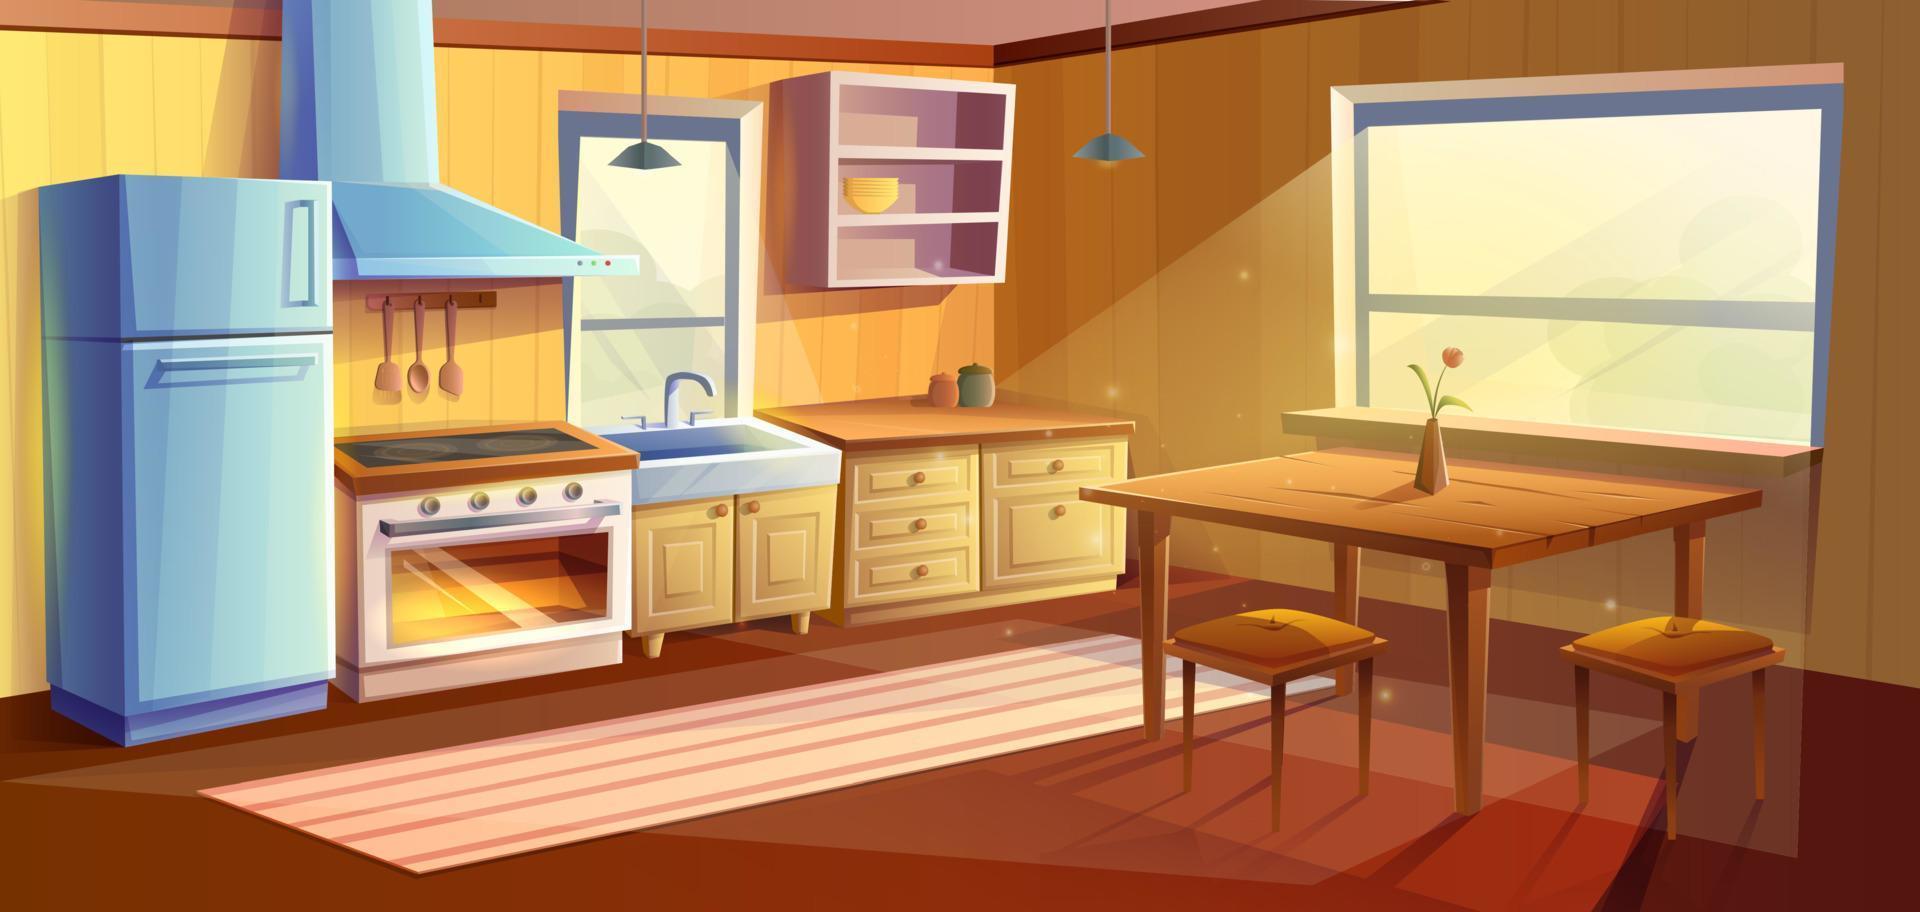 vector dibujos animados estilo ilustración de cocina habitación. comida habitación con comida de madera mesa. refrigerador, horno con un estufa y quemador, hundir, armarios y extractor capucha.